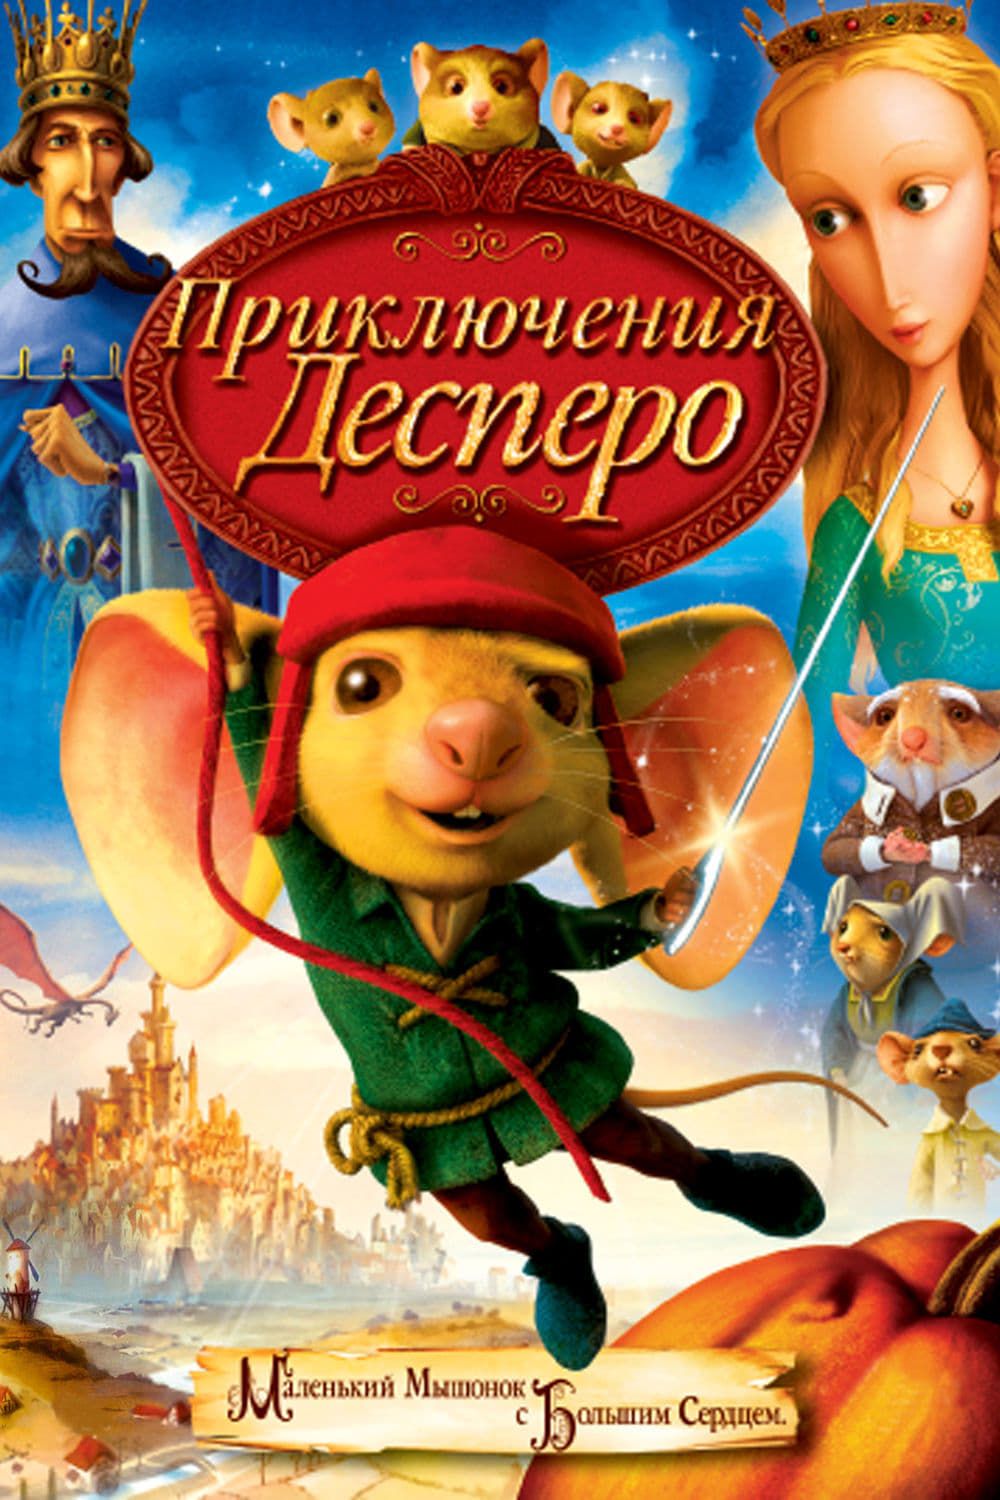 Приключения Десперо (региональное издание) (DVD)